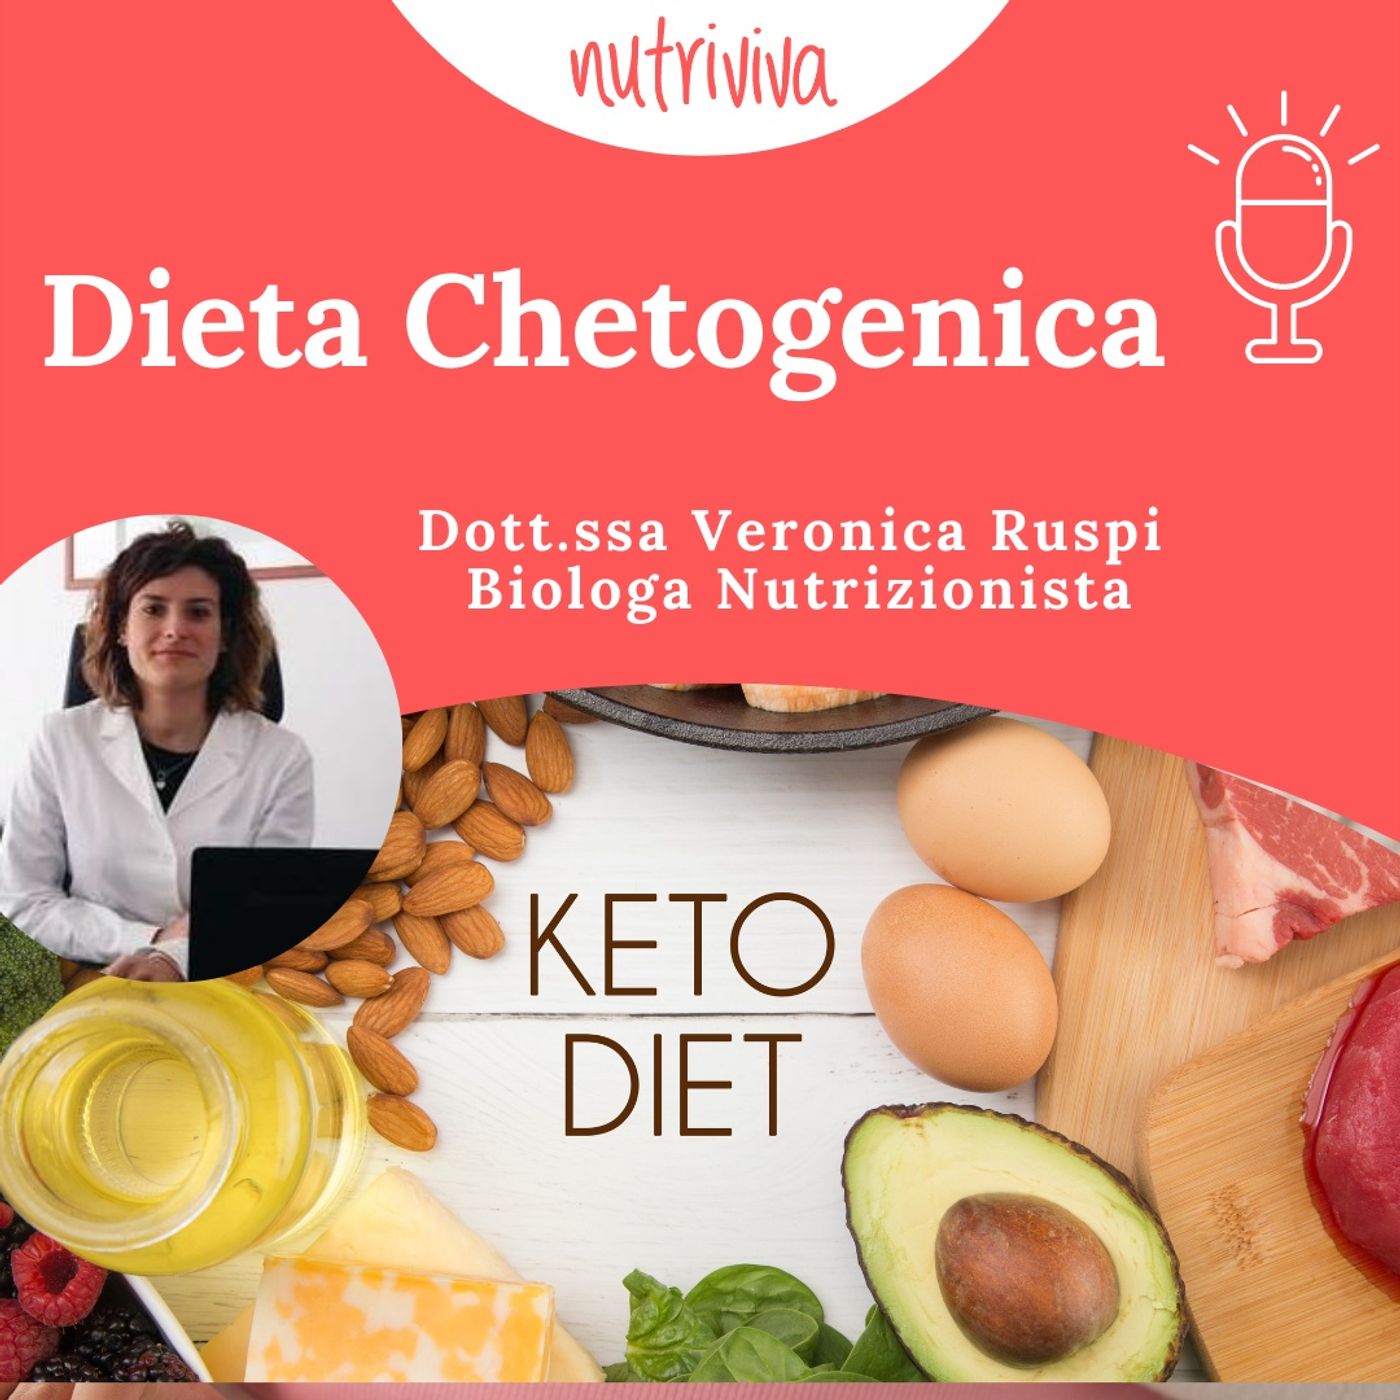 La Dieta Chetogenica, cos’è e chi può affrontarla.  Podcast 0674090e1aa6957d329ed8db823c845f